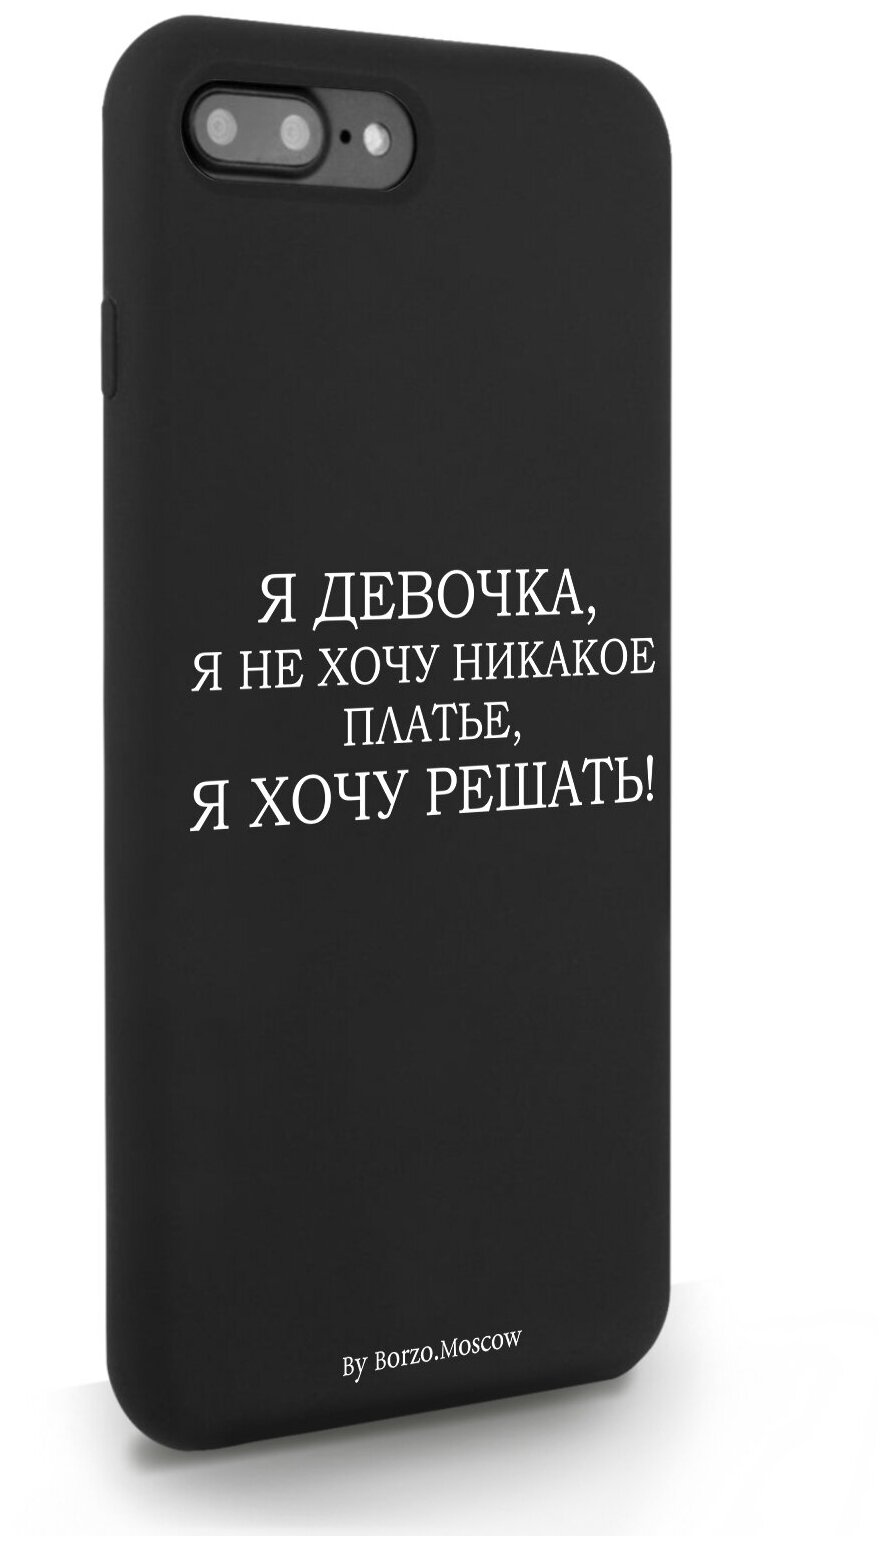 Черный силиконовый чехол Borzo.Moscow для iPhone 7/8 Plus Я девочка, я хочу решать для Айфон 7/8 Плюс